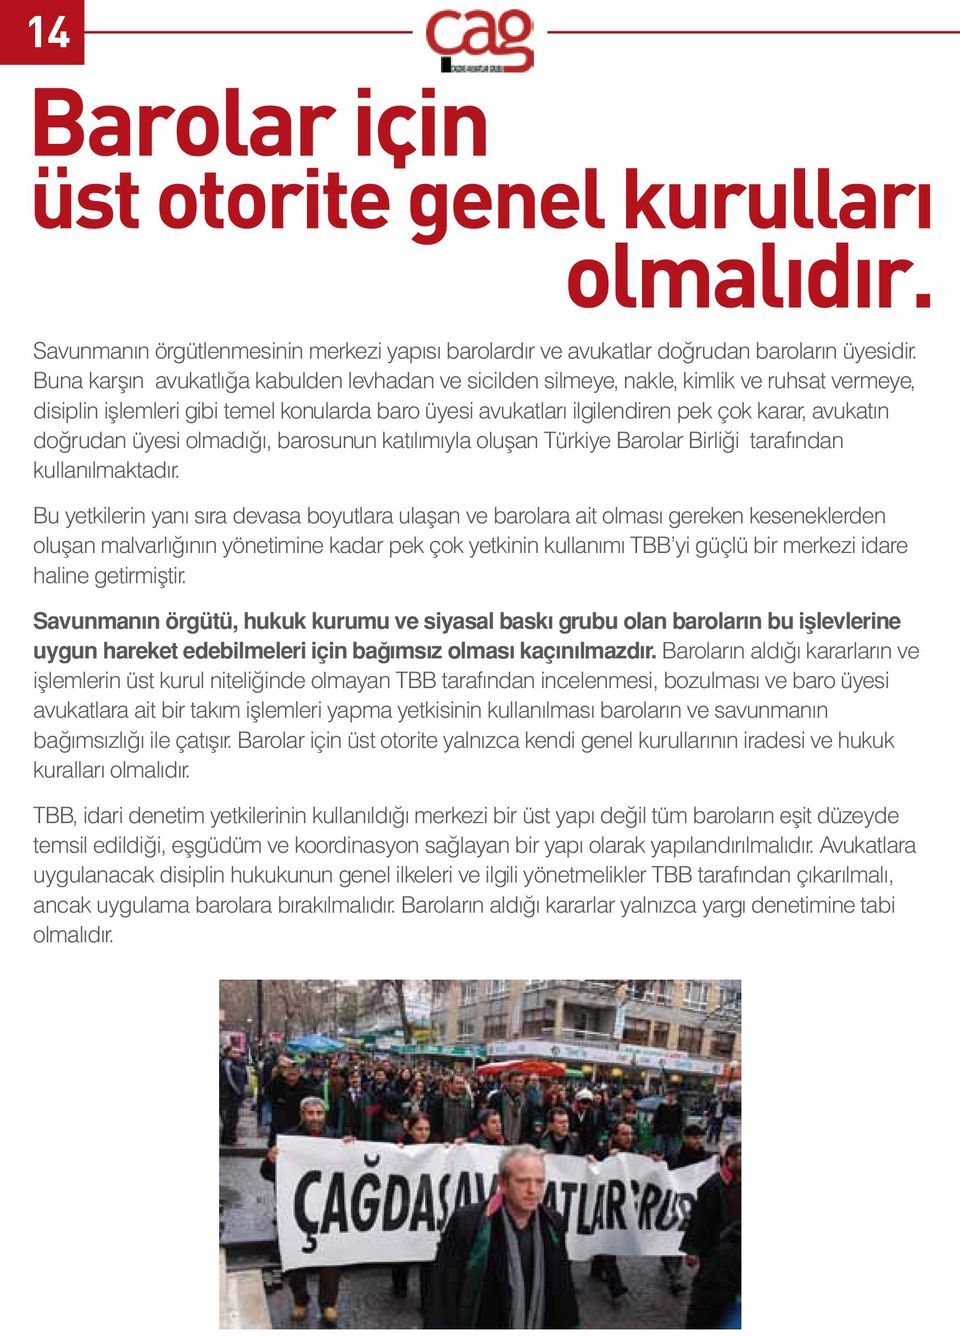 doğrudan üyesi olmadığı, barosunun katılımıyla oluşan Türkiye Barolar Birliği tarafından kullanılmaktadır.